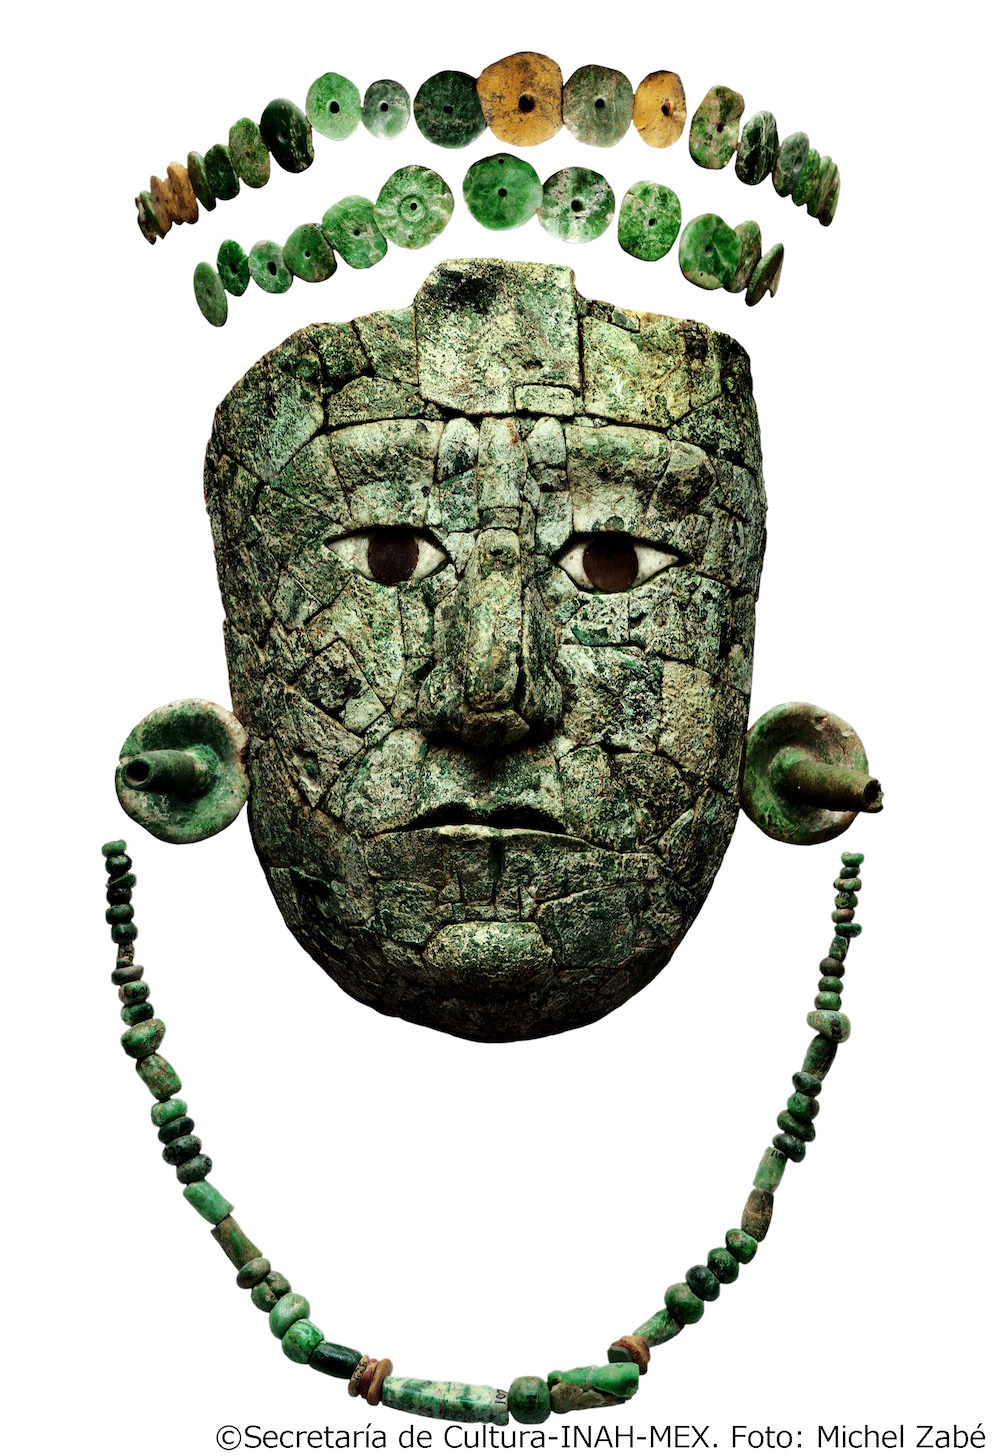 《赤の女王のマスク・冠・首飾り》マヤ文明、7世紀後半 パレンケ、13号神殿出土 アルベルト・ルス・ルイリエ パレンケ遺跡博物館蔵